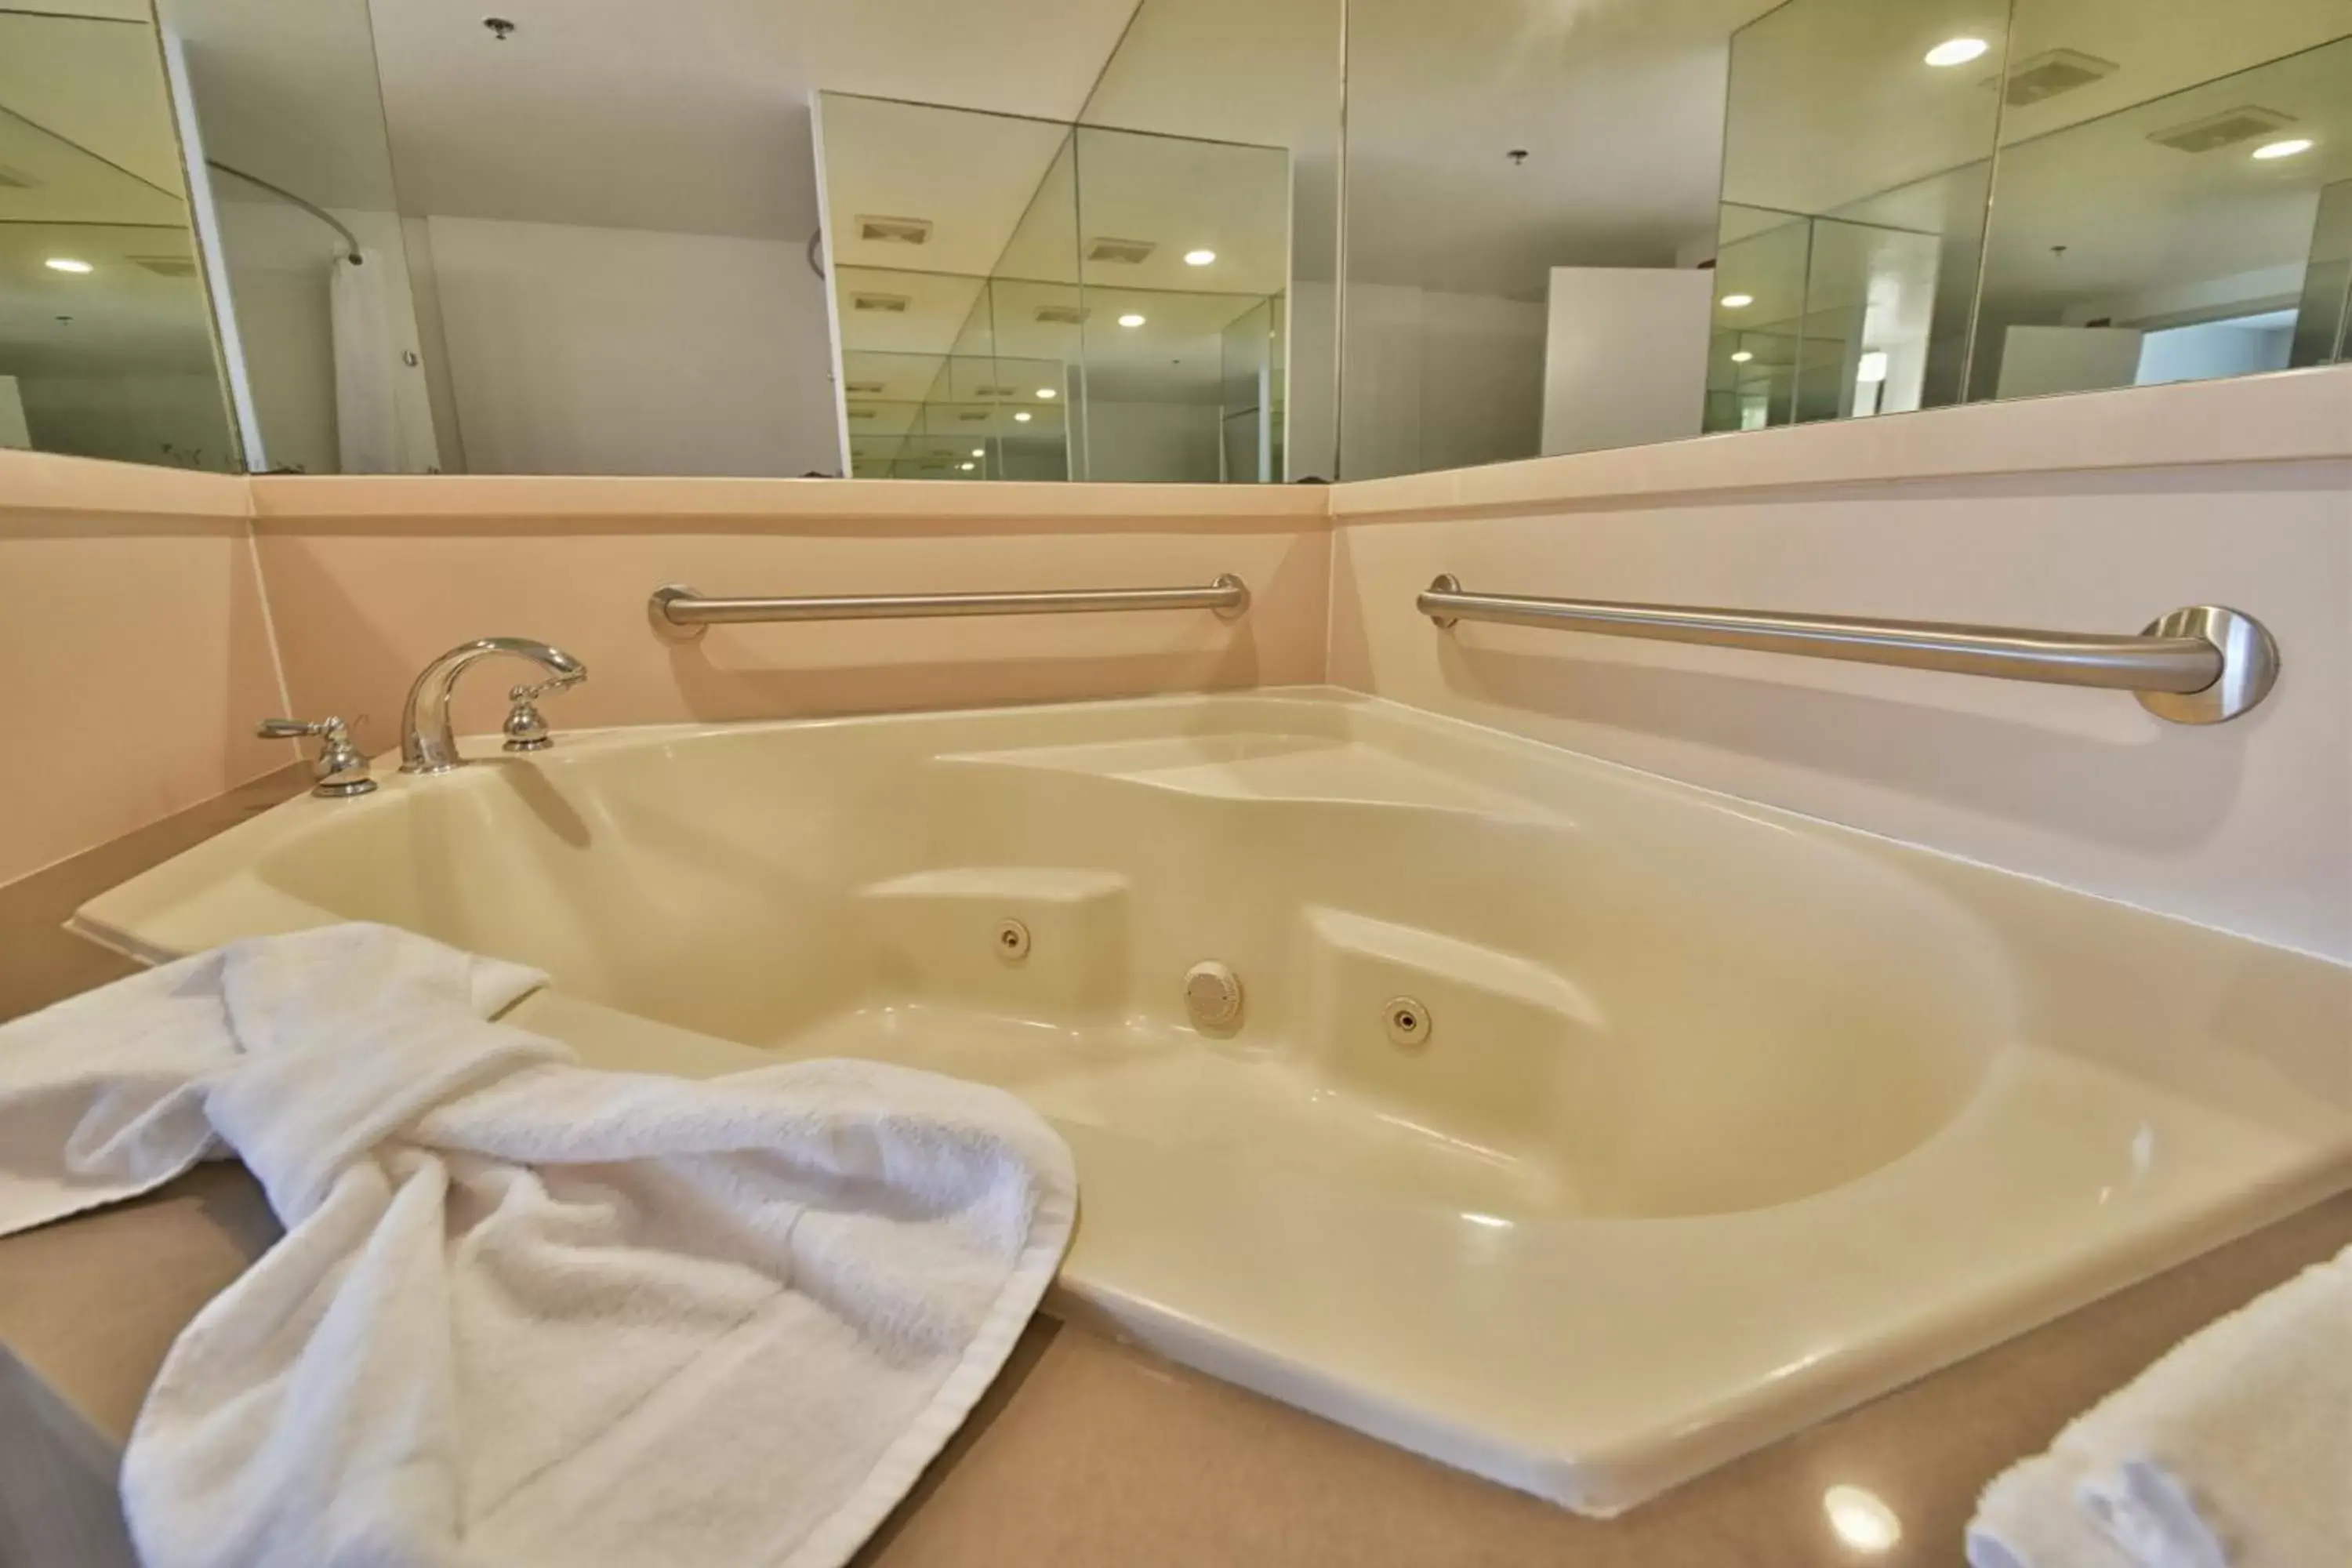 Hot Tub, Bathroom in Country Inn & Suites by Radisson, Ocala, FL